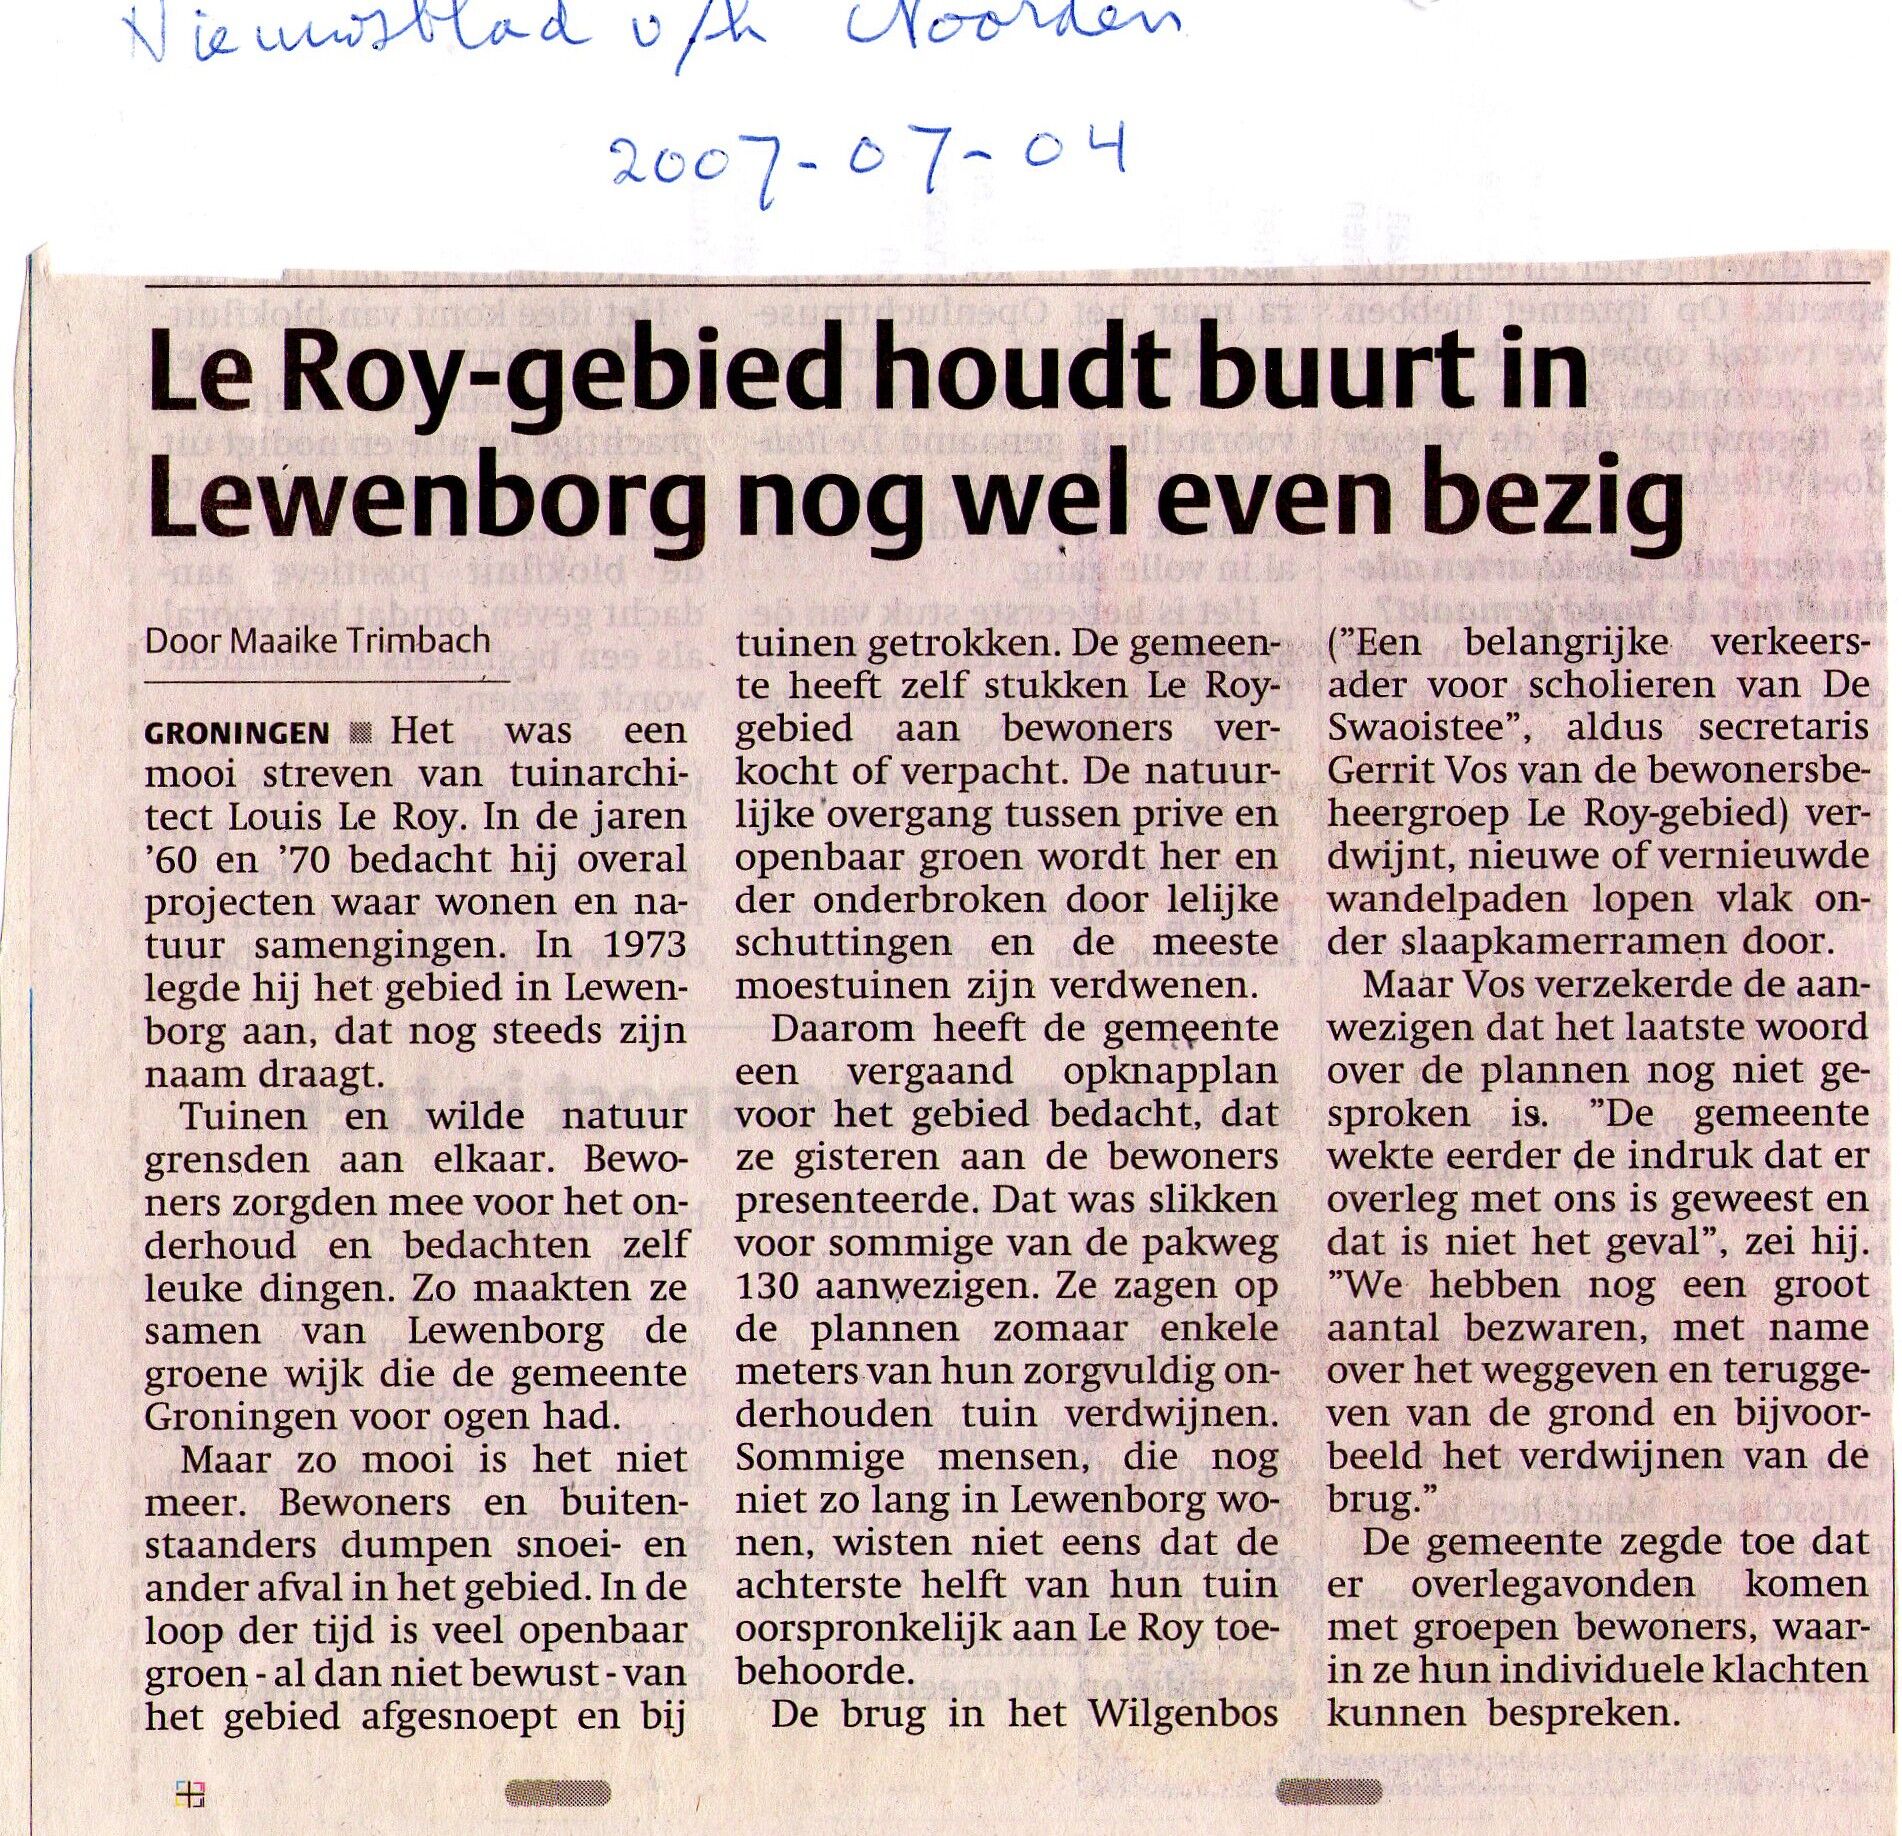 20070704_Le_Roy-gebied_houdt_buurt_in_Lewenborg_nog_wel_even_bezig.jpg